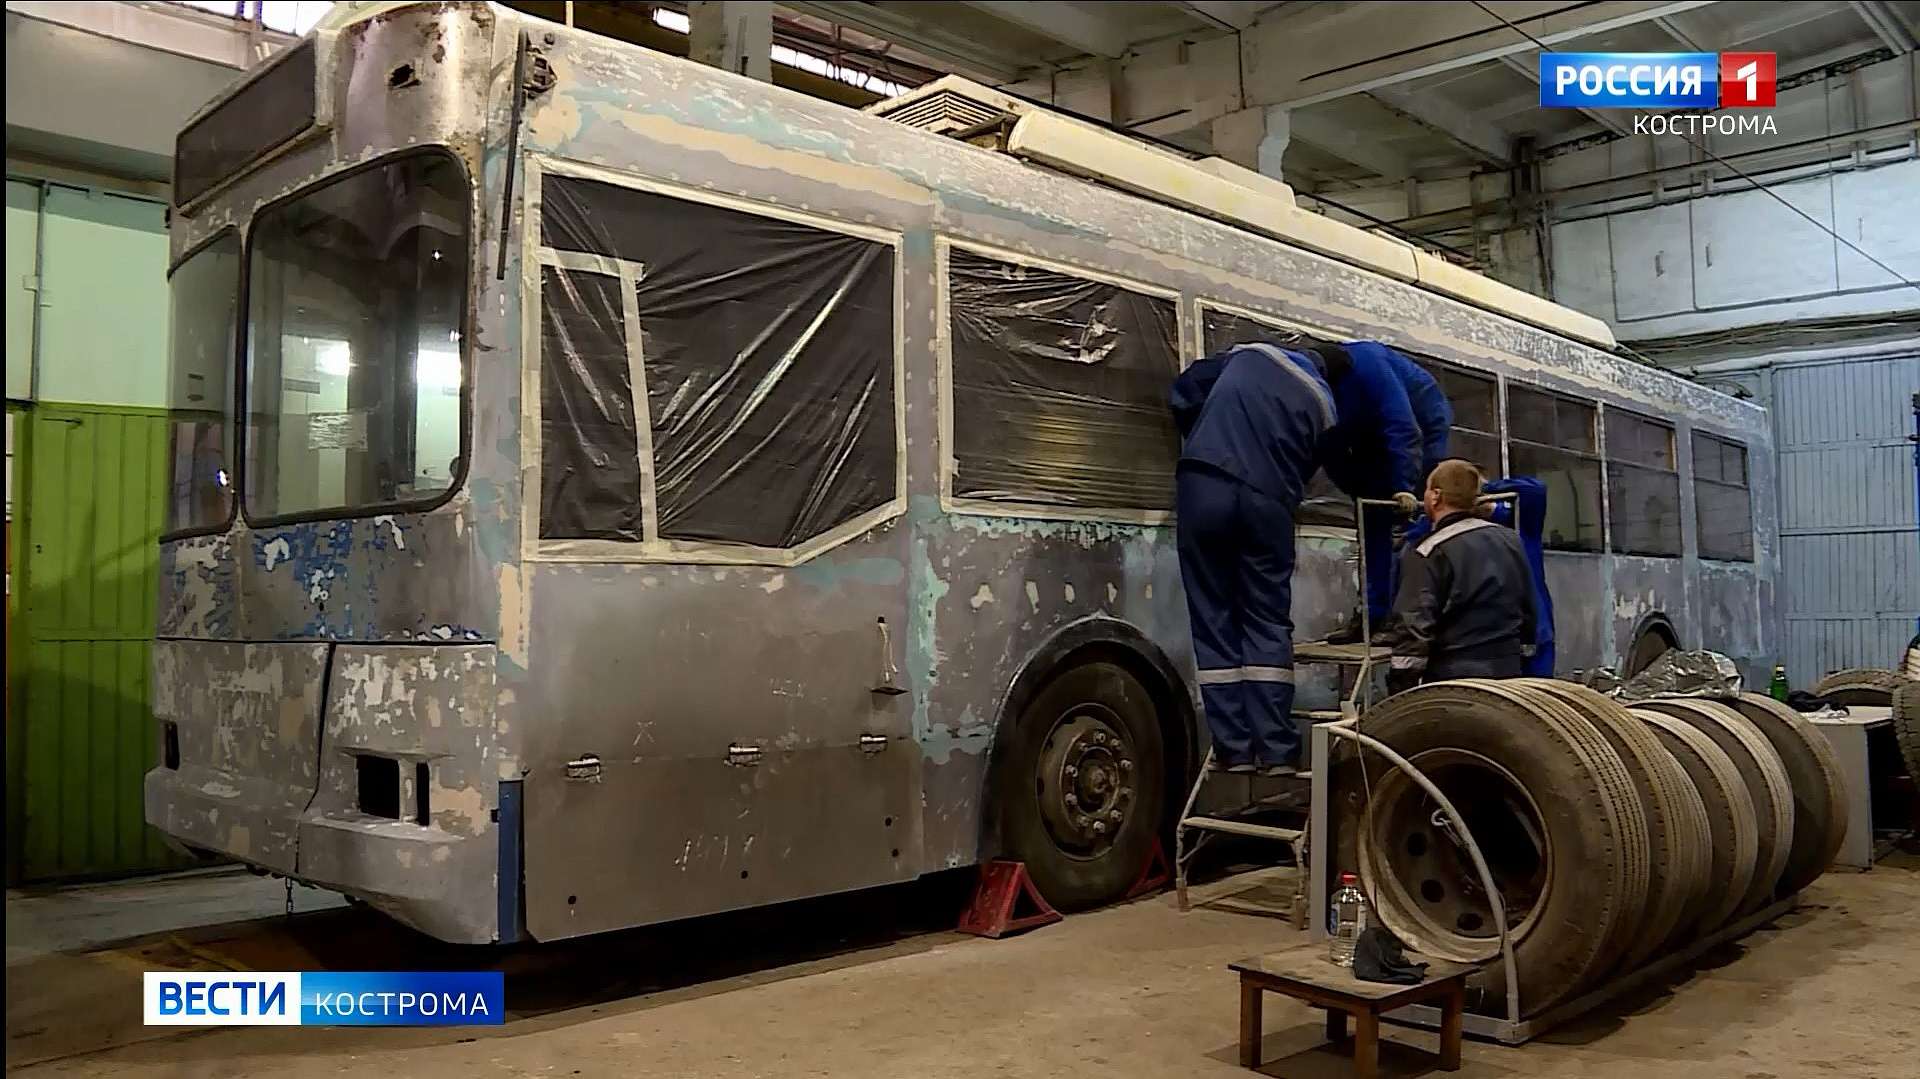 Ещё один московский троллейбус выйдет на улицы Костромы в декабре